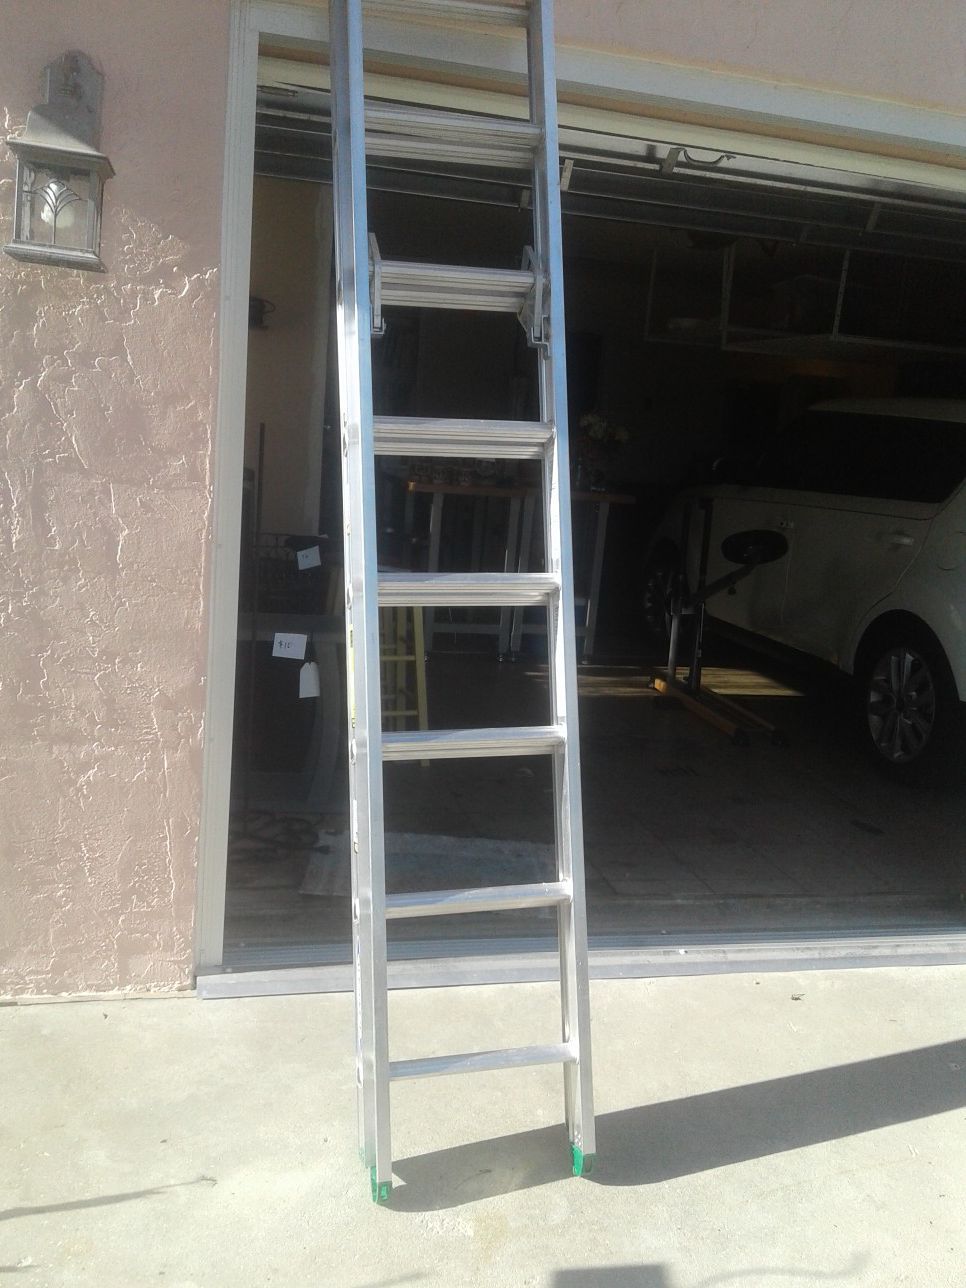 Werner 16 ft extension ladder